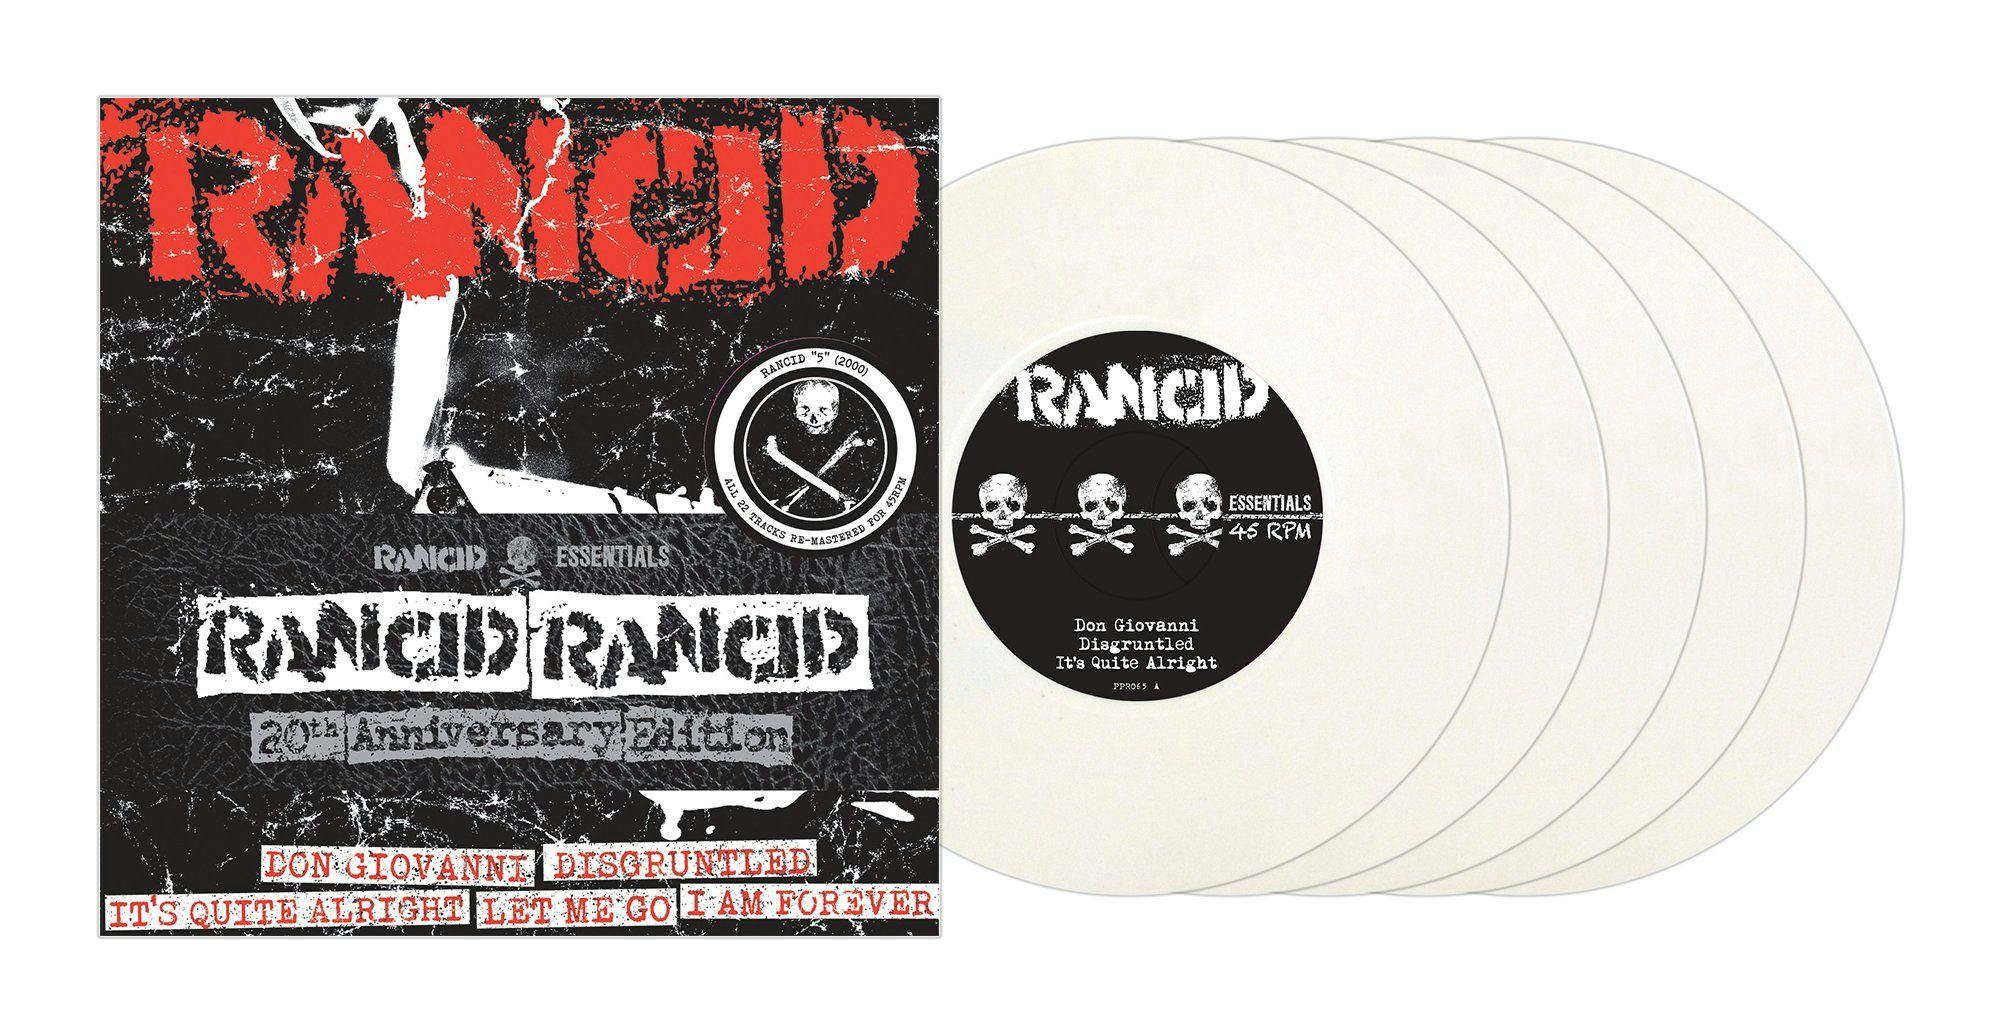 RANCID レコード カラー www.sudouestprimeurs.fr